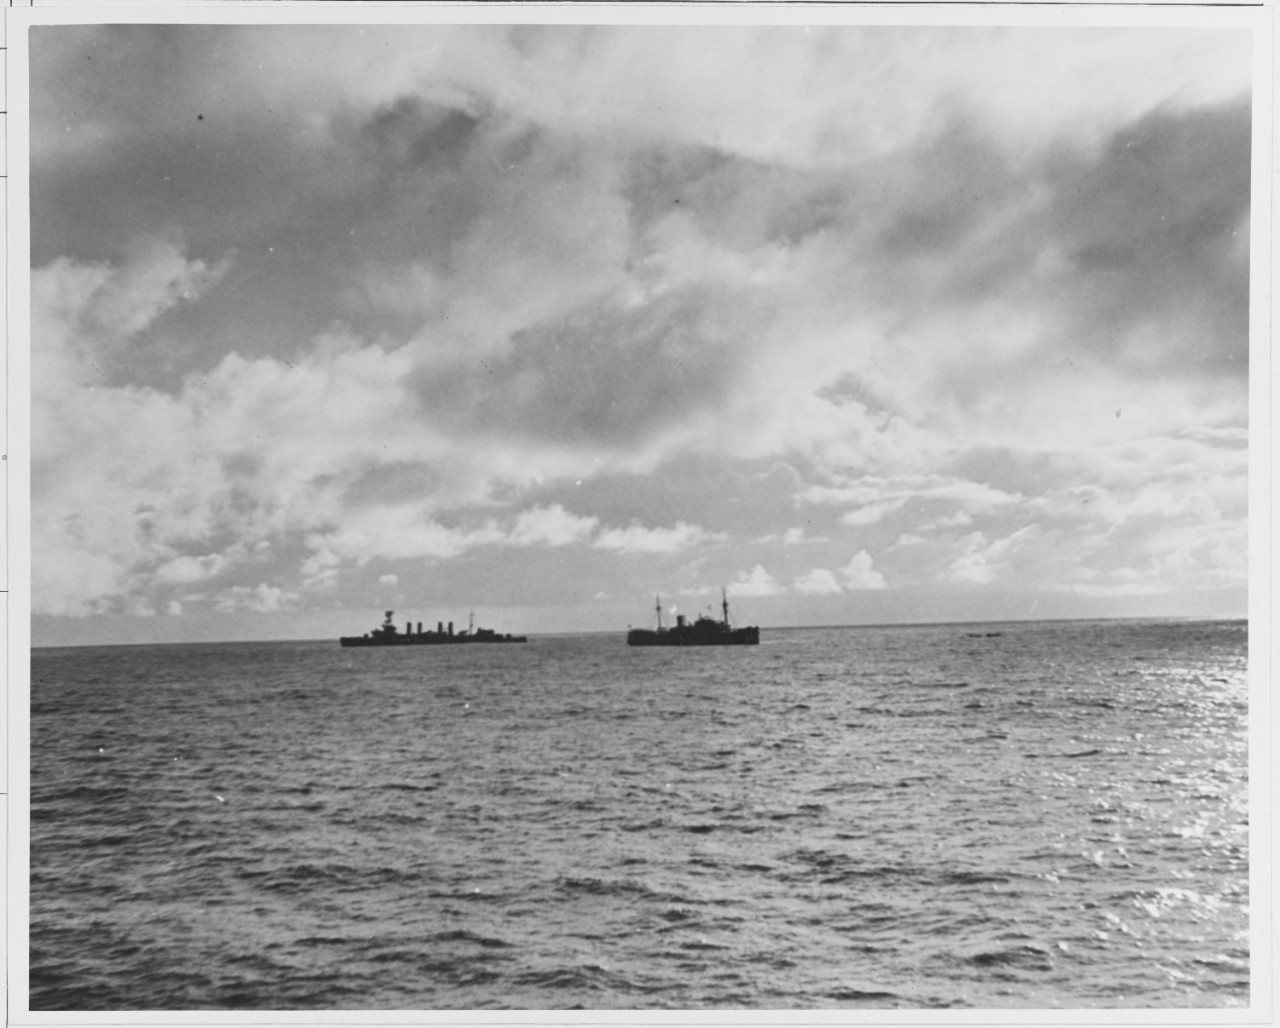 USS OMAHA/ODENWALD Incident, World War II